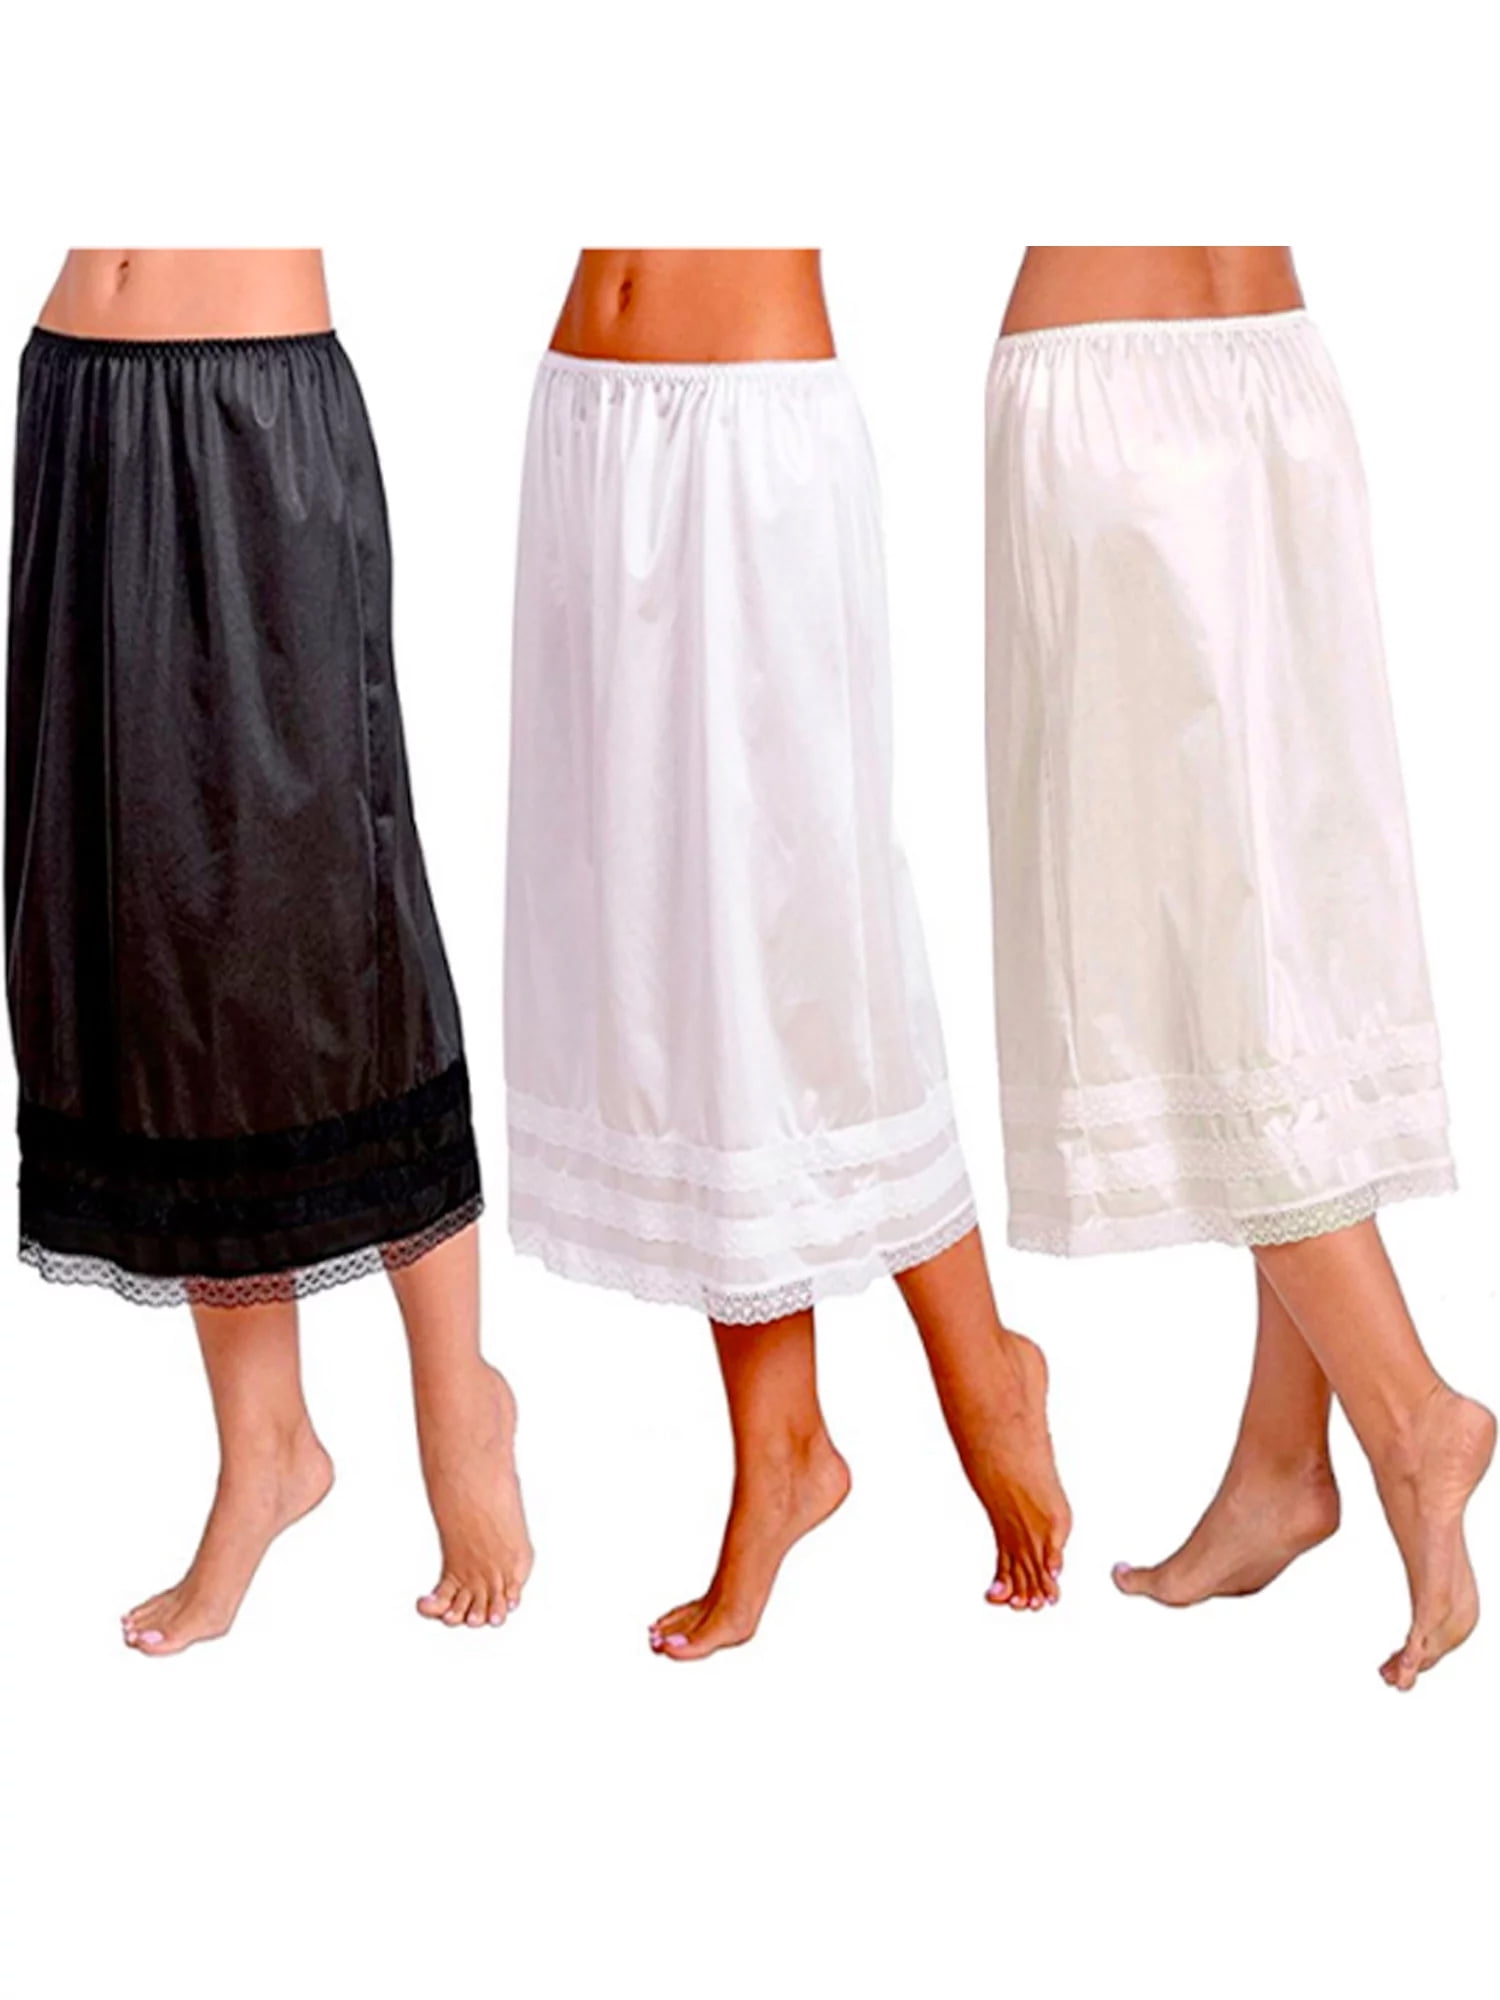 Women Half Slips for Under Dresses Petticoat Skirt Elastic Short